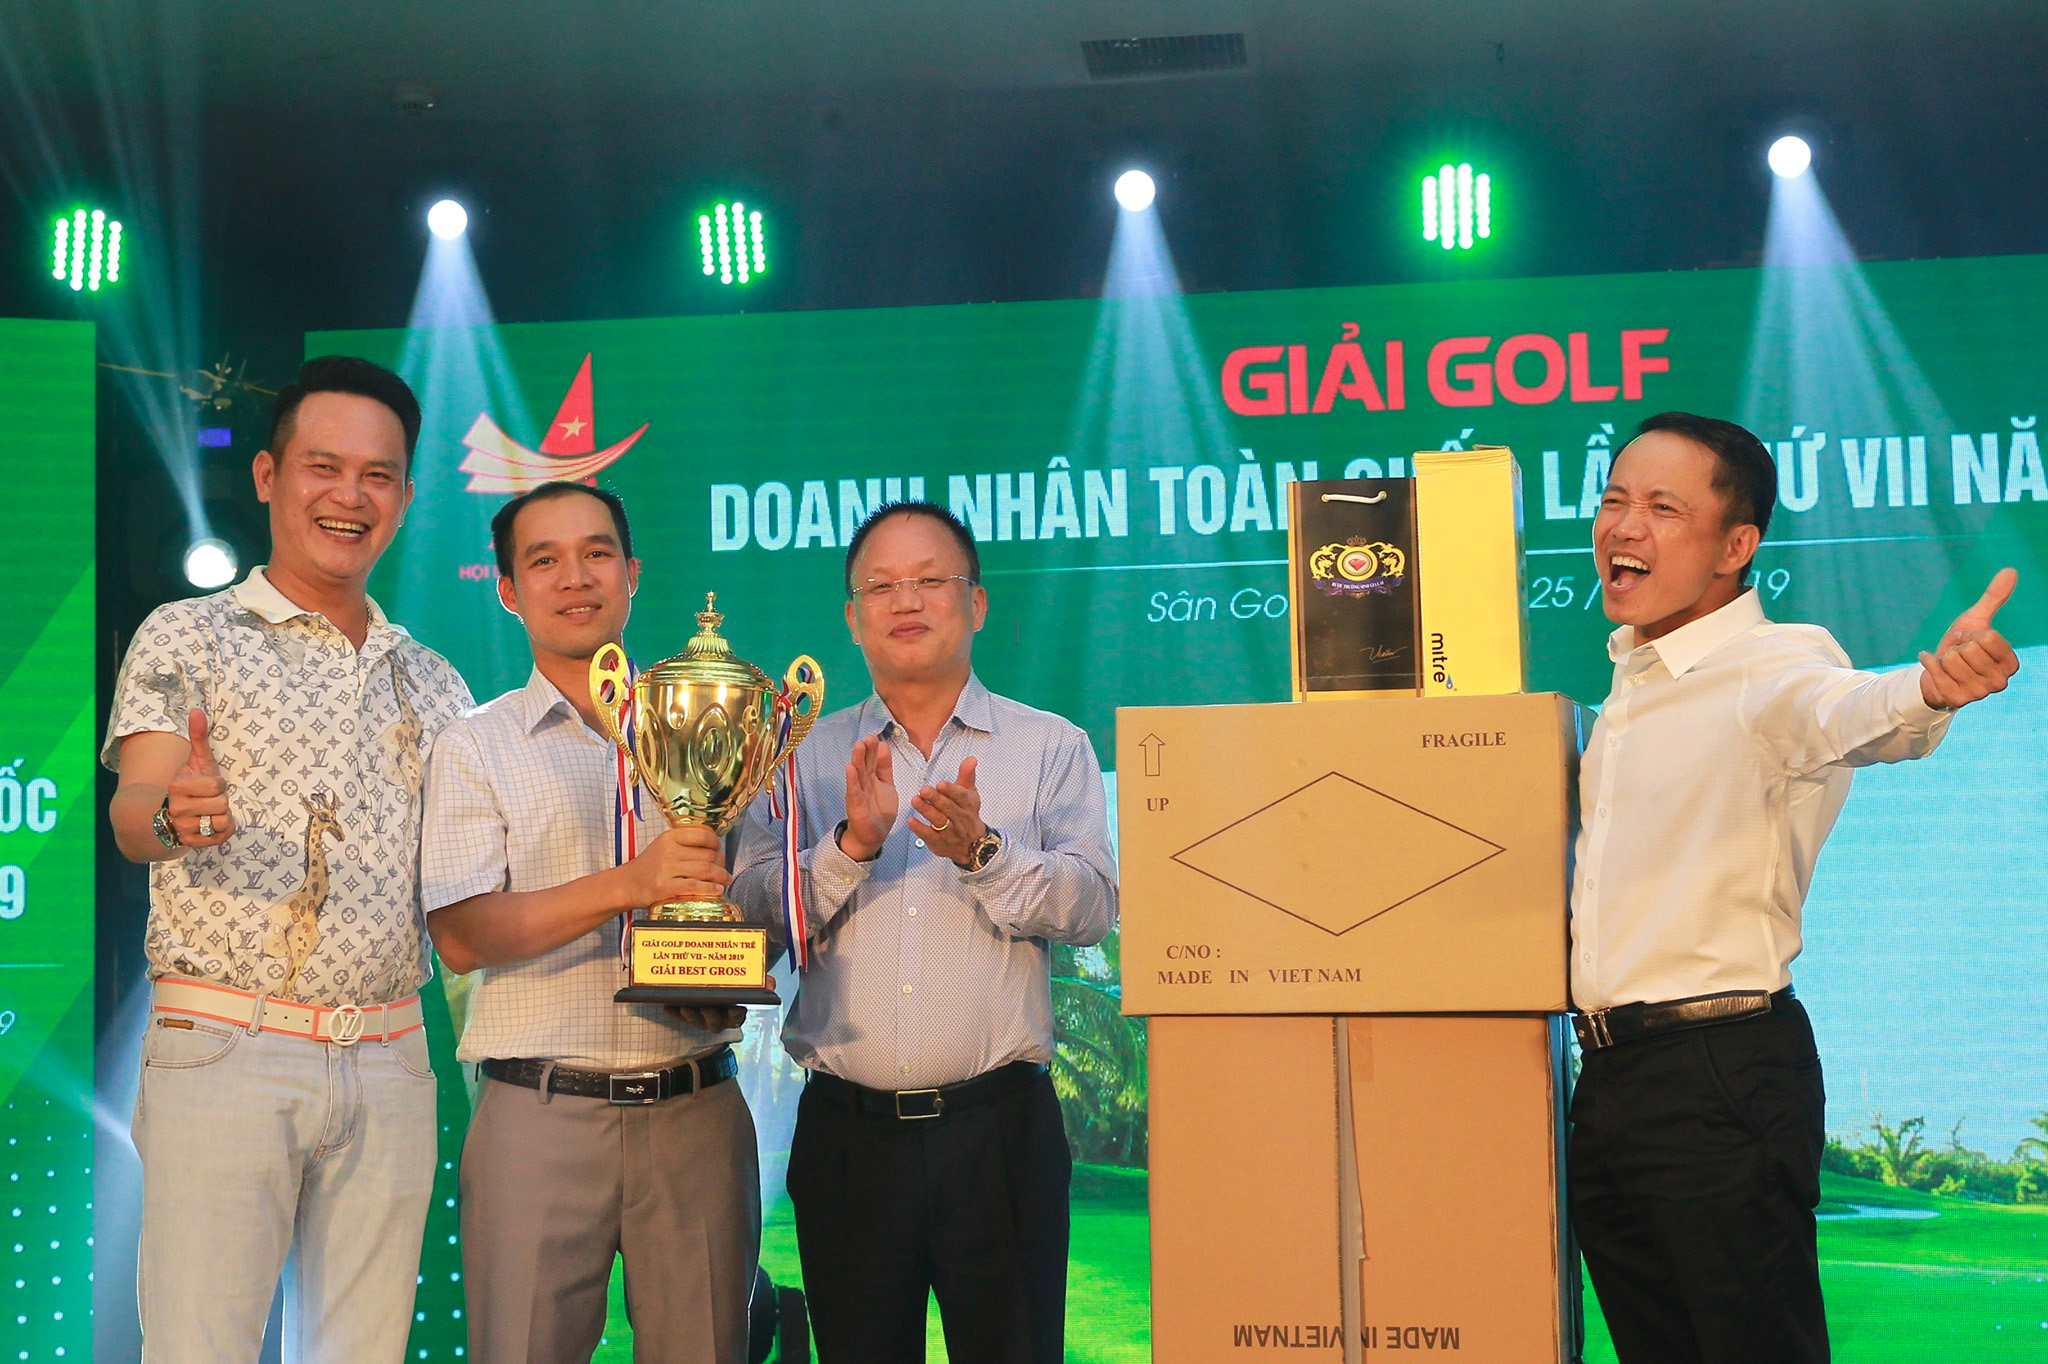 Sau một ngày thi đấu nhiệt tình với tinh thần fairplay, giải Best Gross năm nay thuộc về Golfer Nguyễn Đức Quyết.